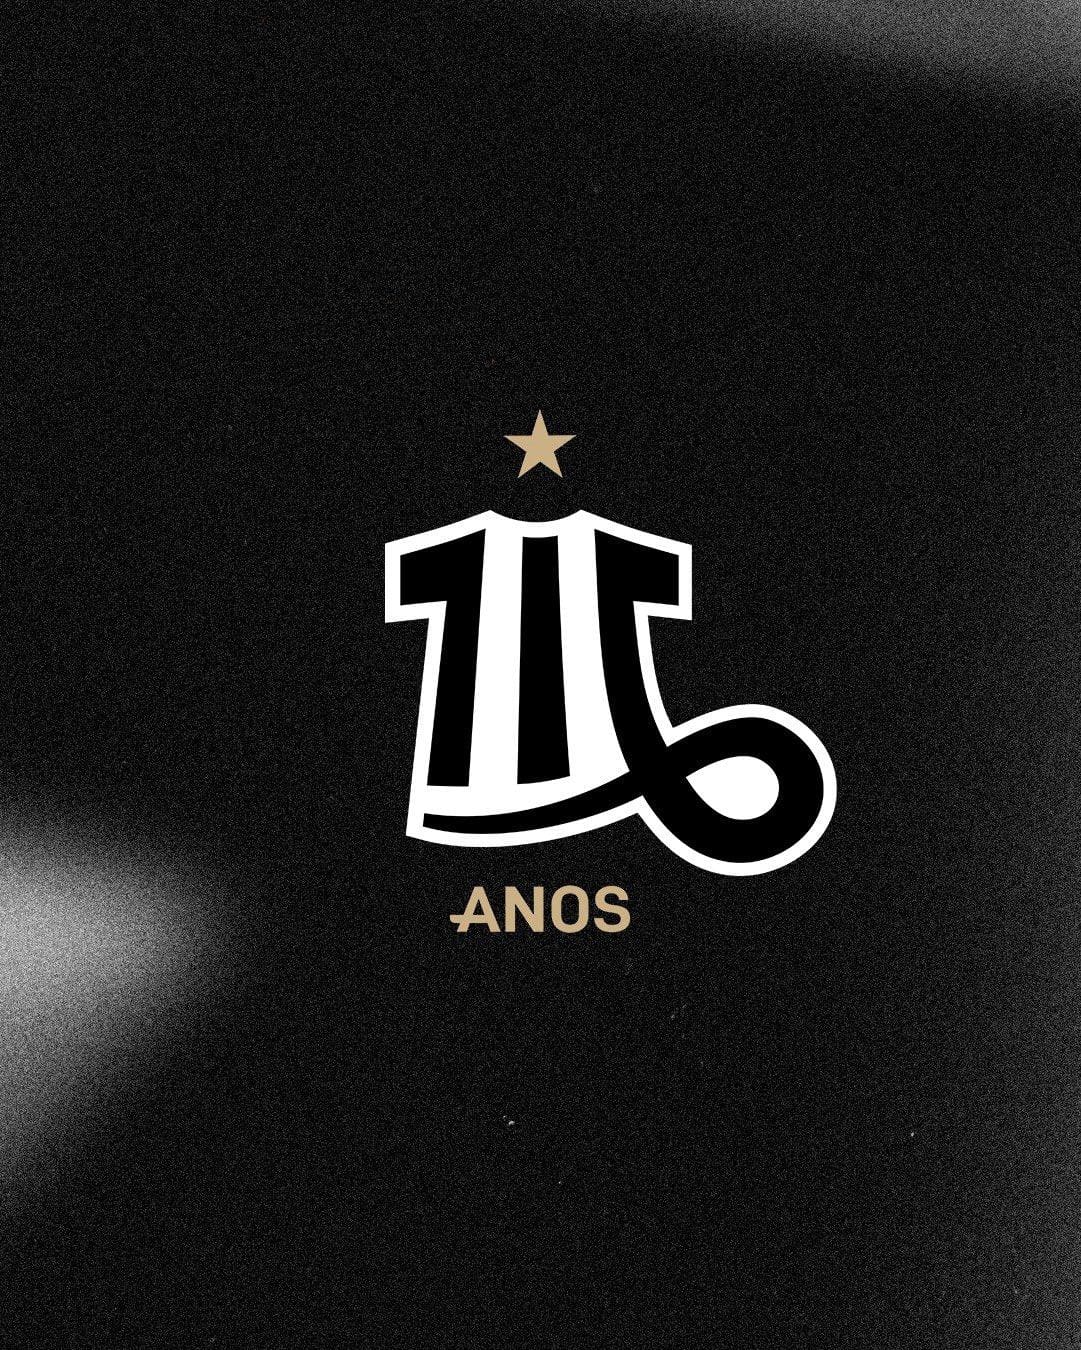 Marca comemorativa dos 116 do Atlético